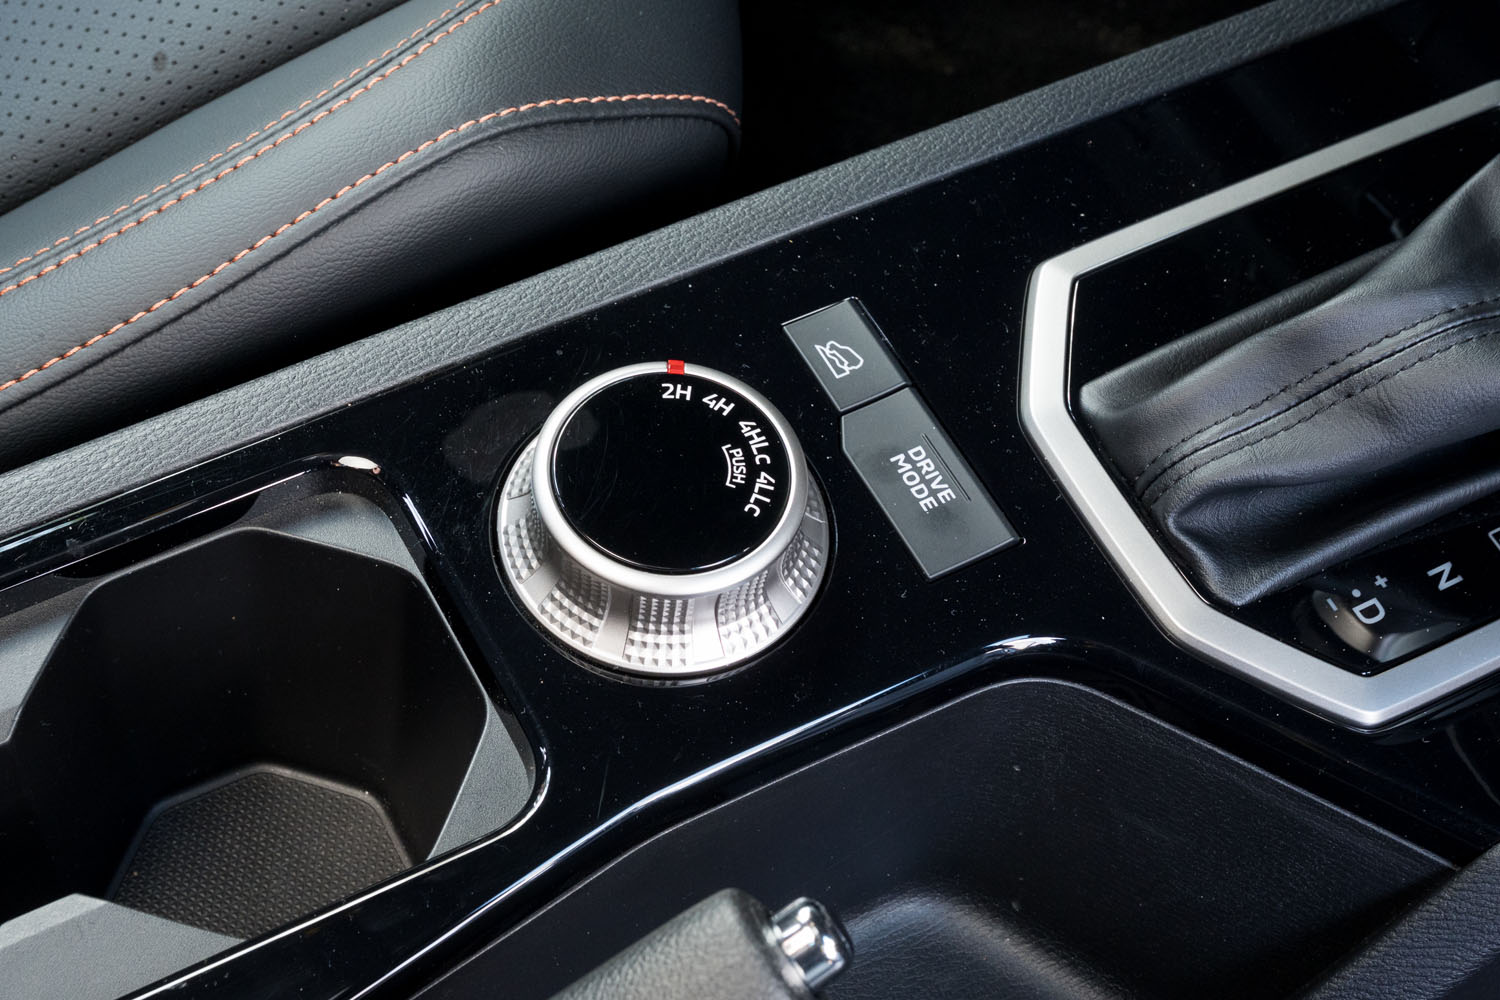 センターコンソールに備わる「ドライブモード」の切り替えボタンと、ダイヤル式のトランスファーのコントローラー。リアデフロックのボタンはダッシュボード側、空調パネルの下に備わる。